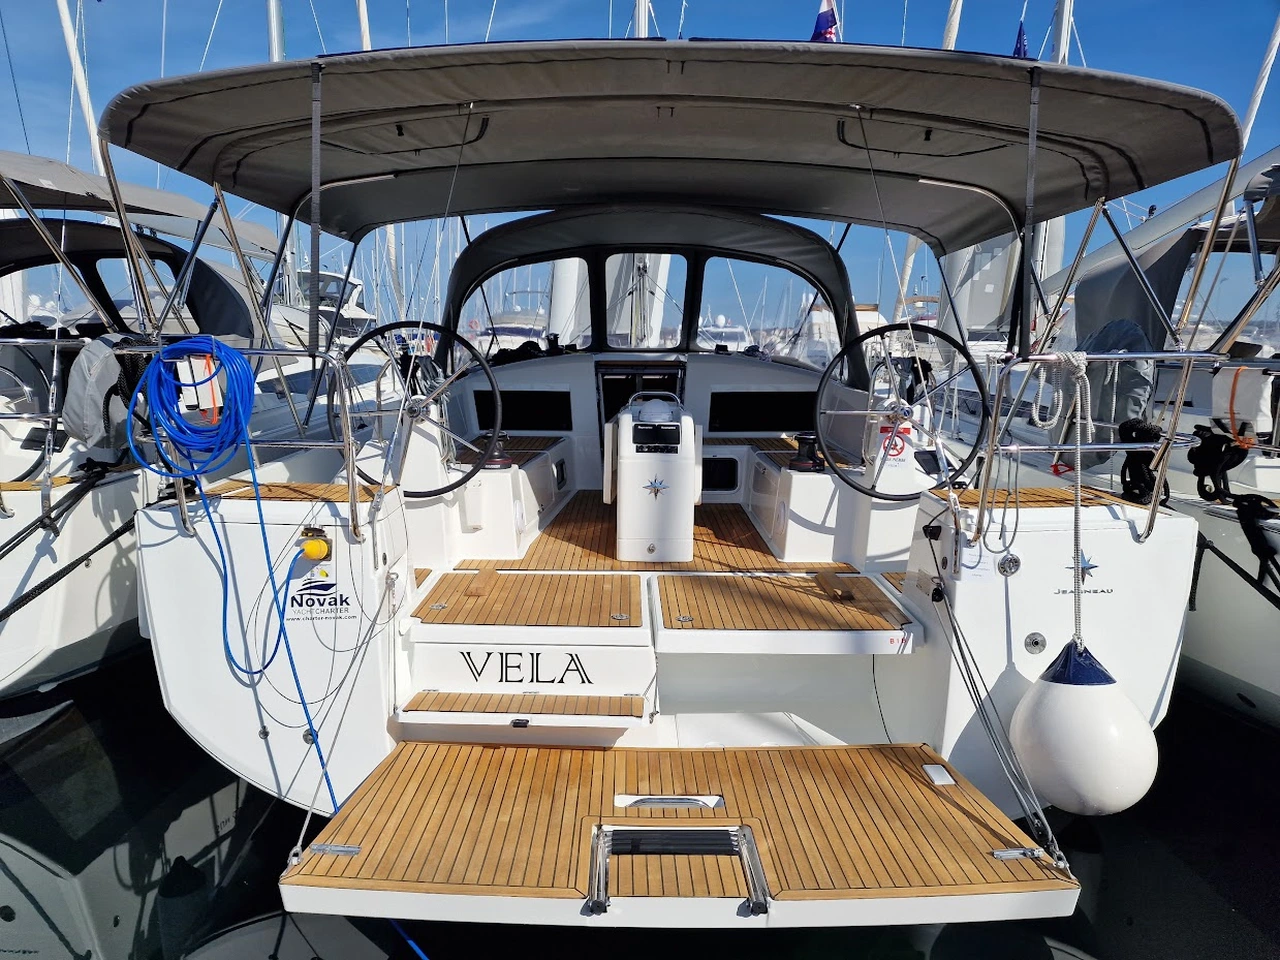 Sun Odyssey 440-Segelyacht Vela in Kroatien